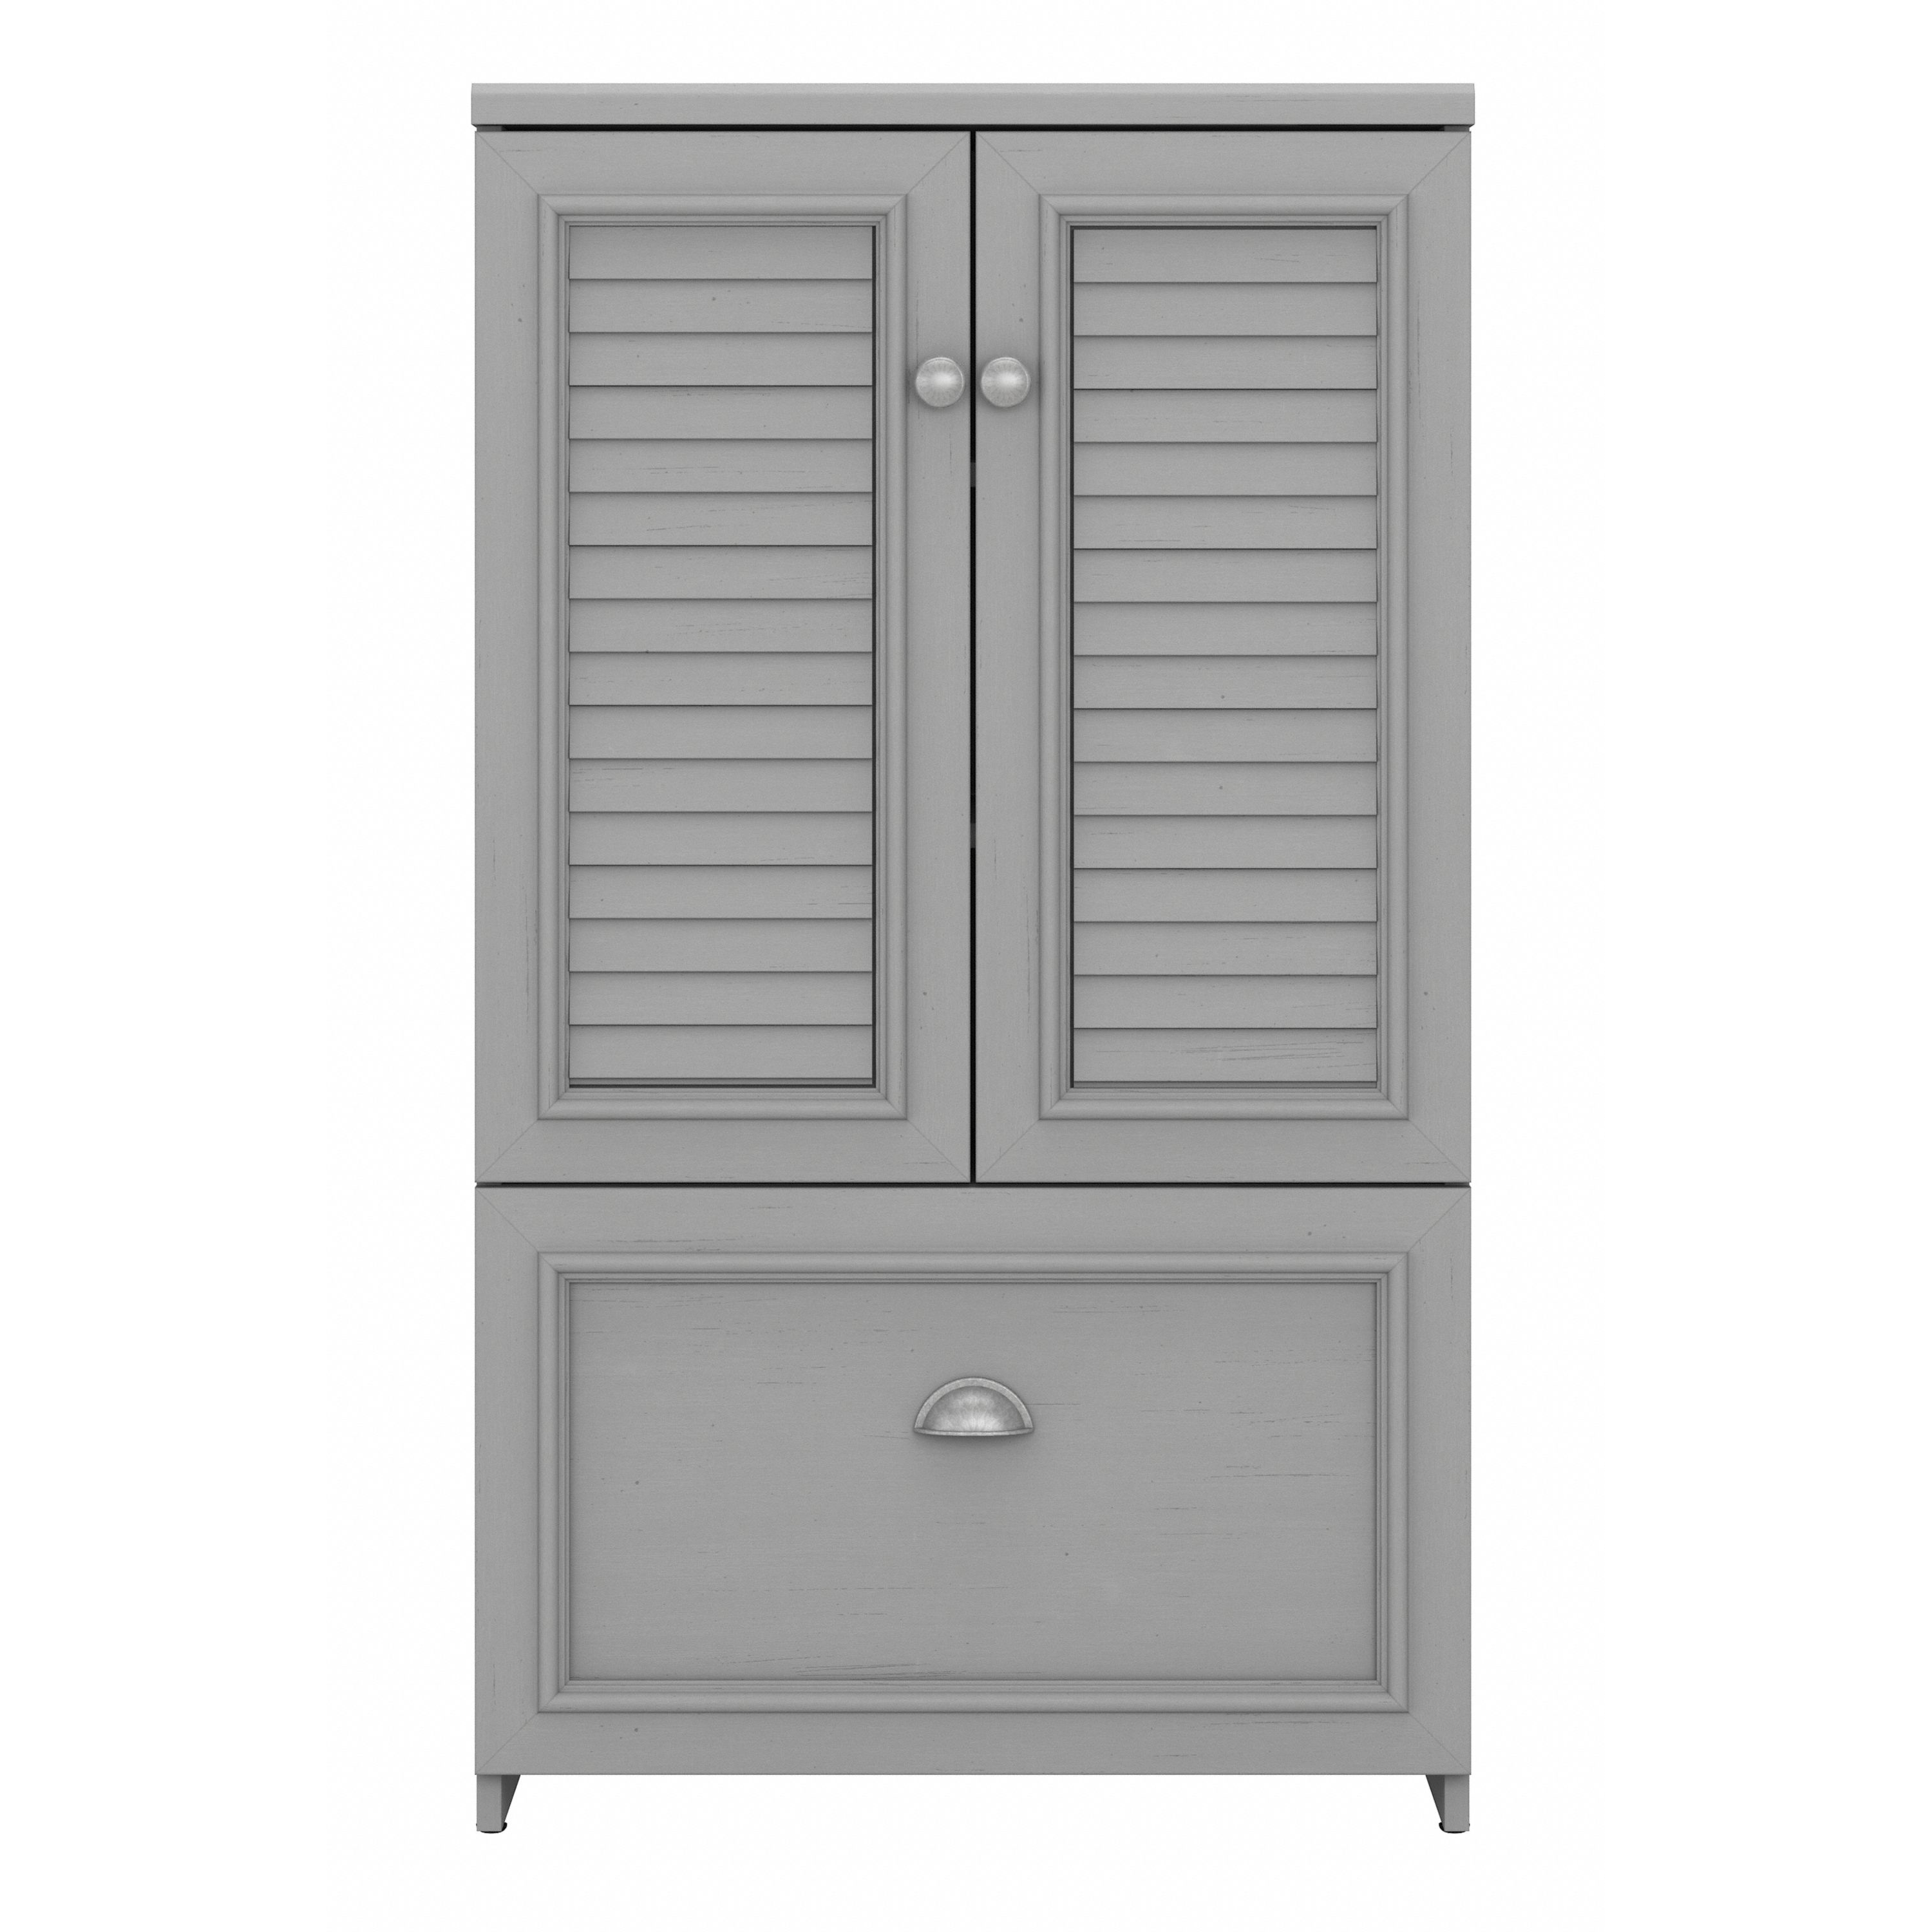 Shop Bush Furniture Fairview Shoe Storage Cabinet with Doors 03 FV020CG #color_cape cod gray